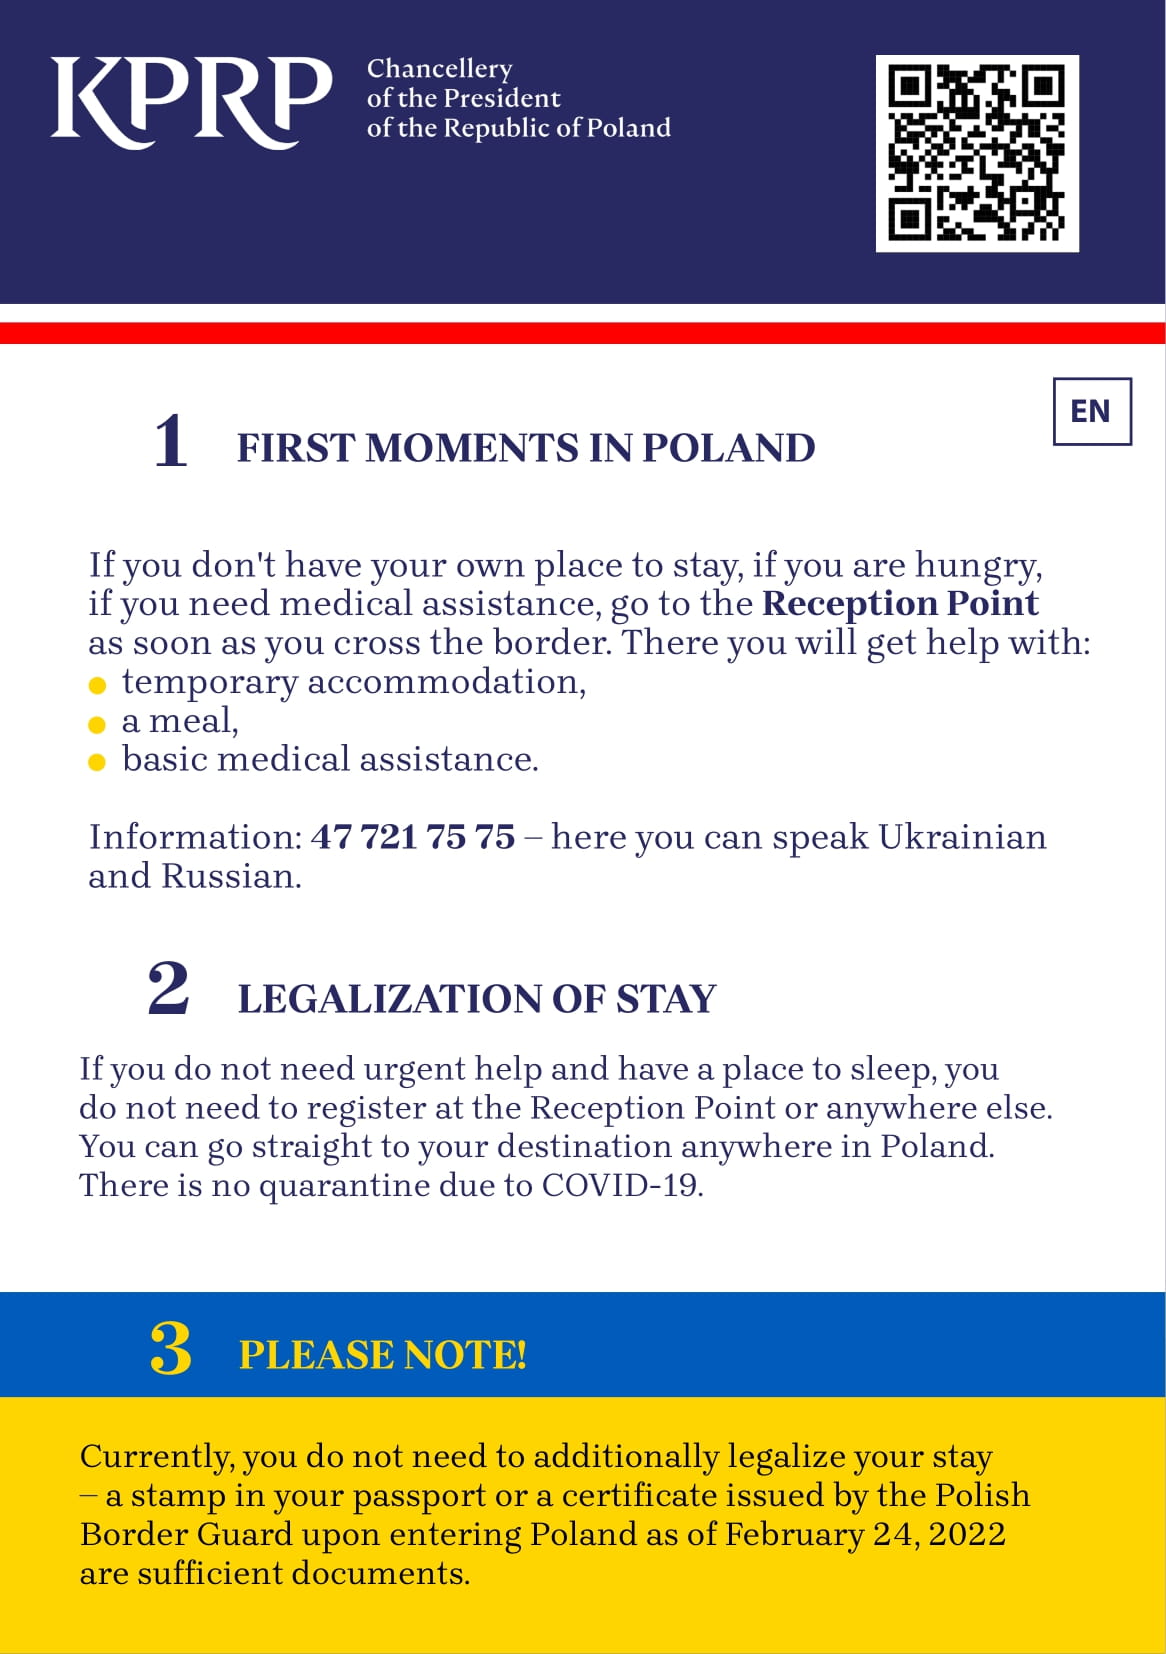 POMOC DLA UCHODŹCÓW Z UKRAINY &#8211; INFORMACJE